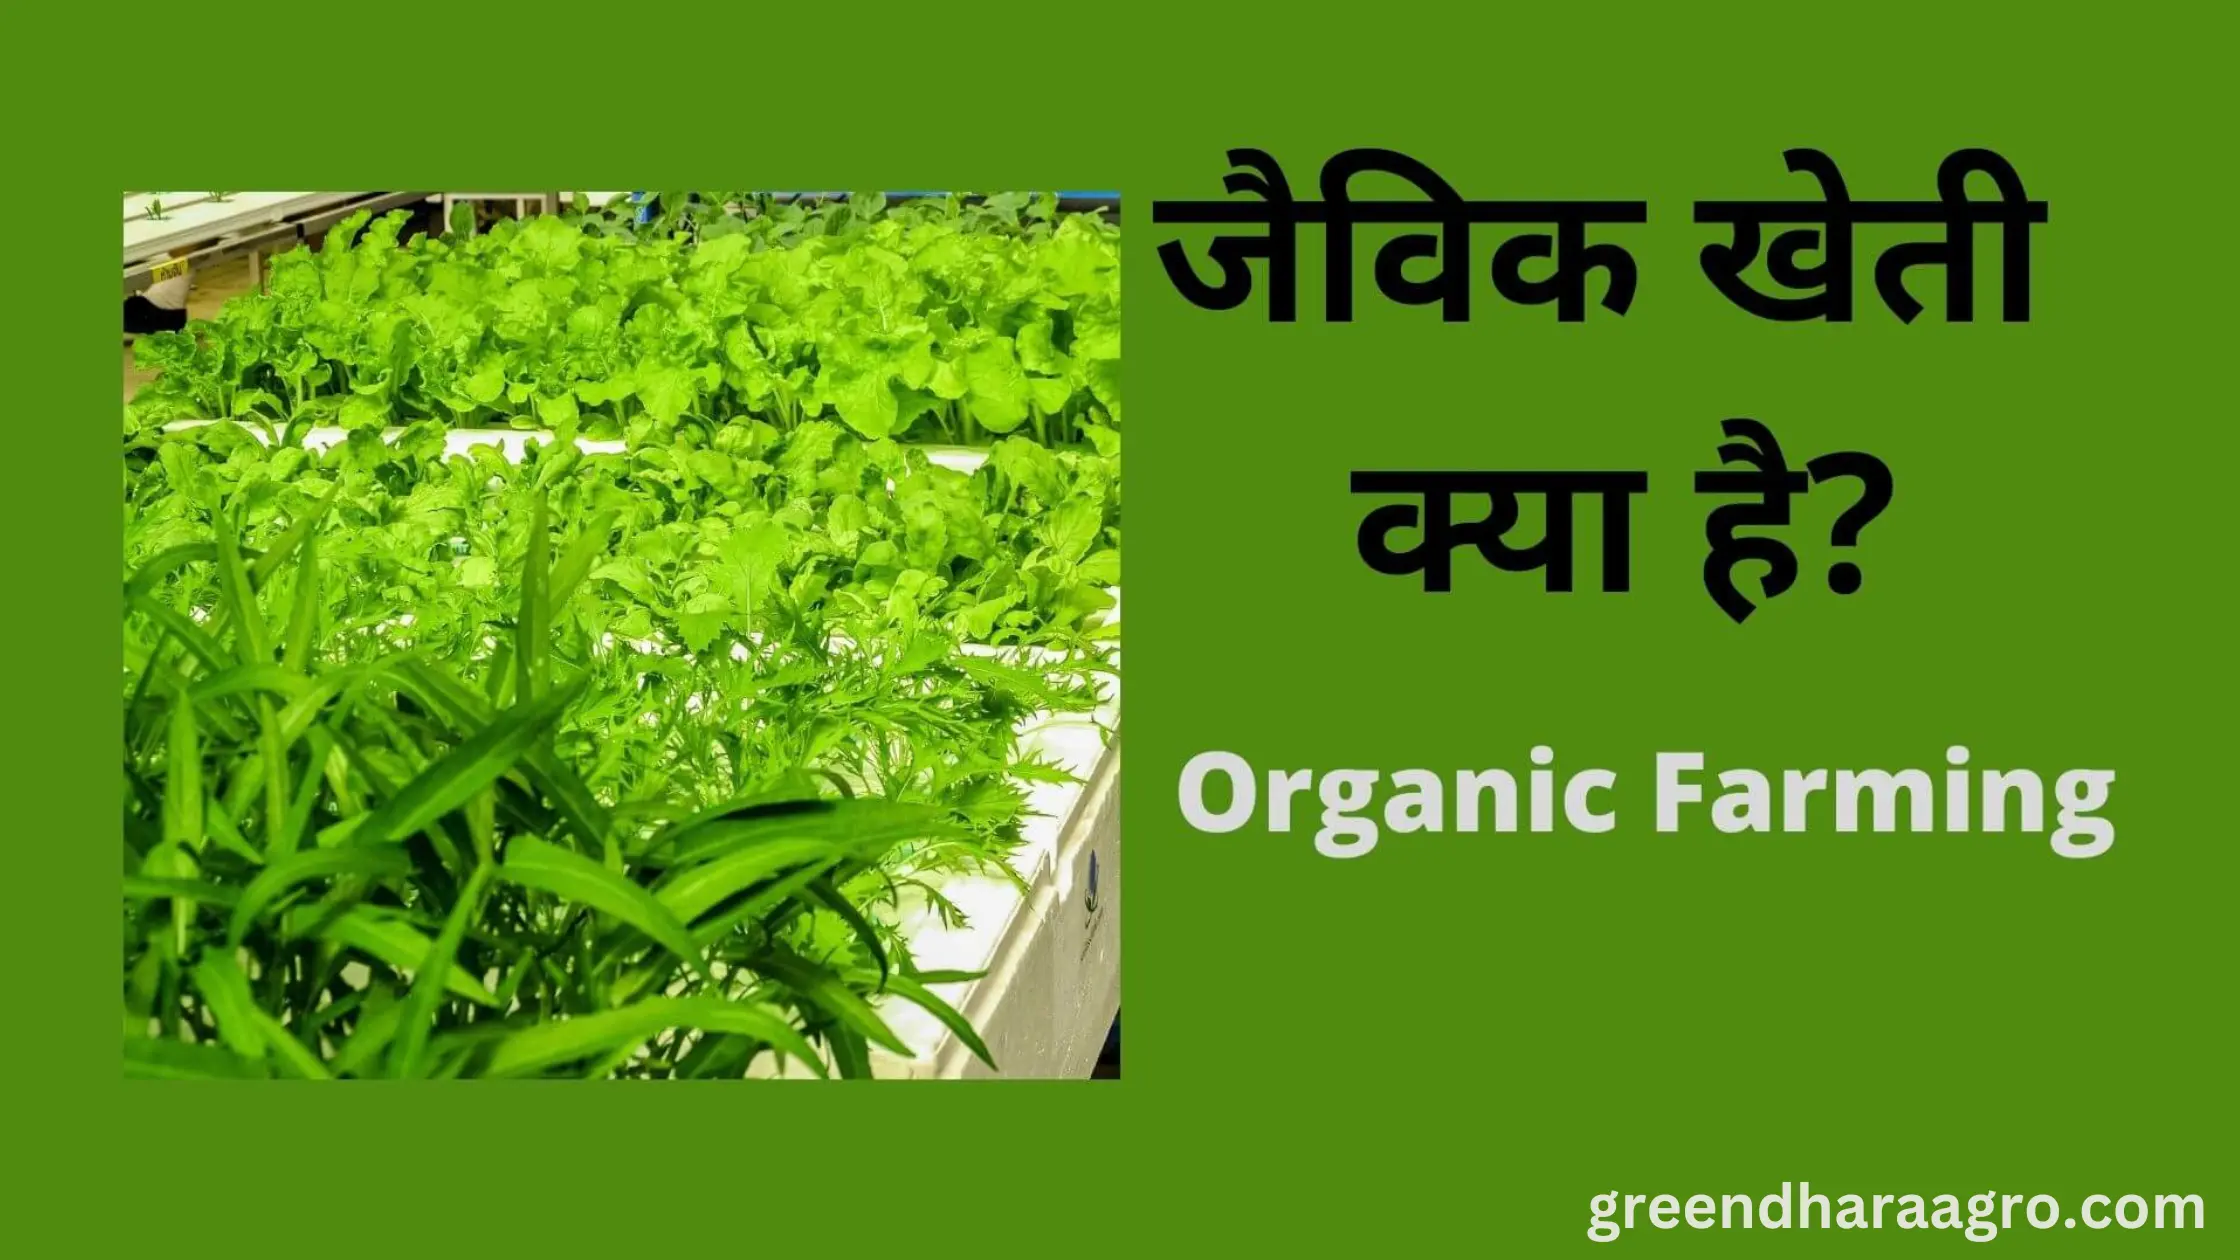 ऑर्गेनिक खेती क्या होती है | ऑर्गेनिक या जैविक खेती कैसे करे | Organic Farming in Hindi